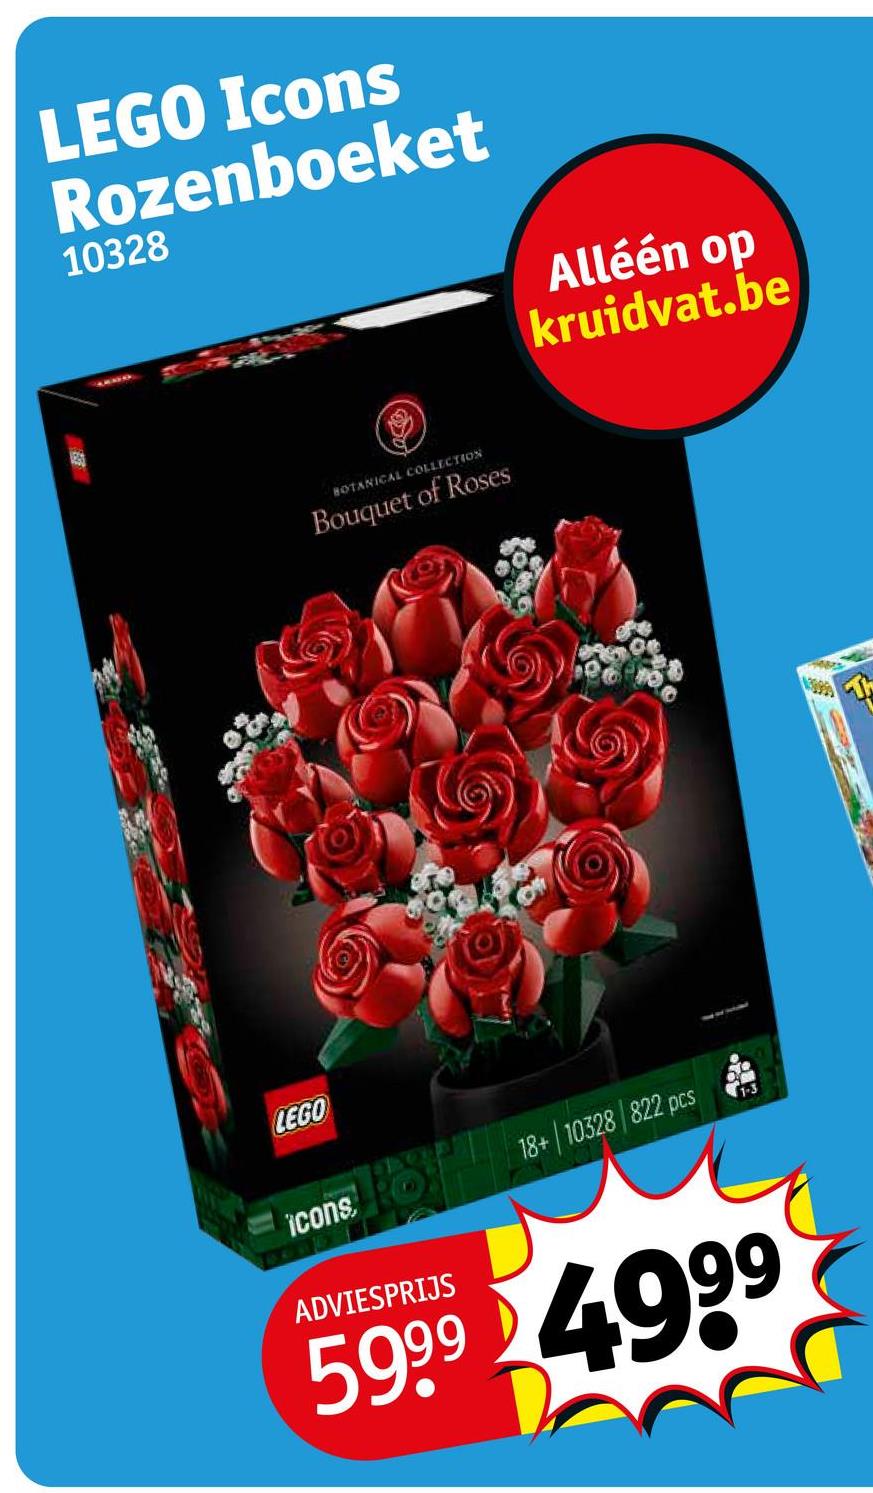 LEGO Icons
Rozenboeket
10328
BOTANICAL COLLECTION
Bouquet of Roses
Alléén op
kruidvat.be
LEGO
icons: 18+/10328/822 pcs
ADVIESPRIJS
5999 4999